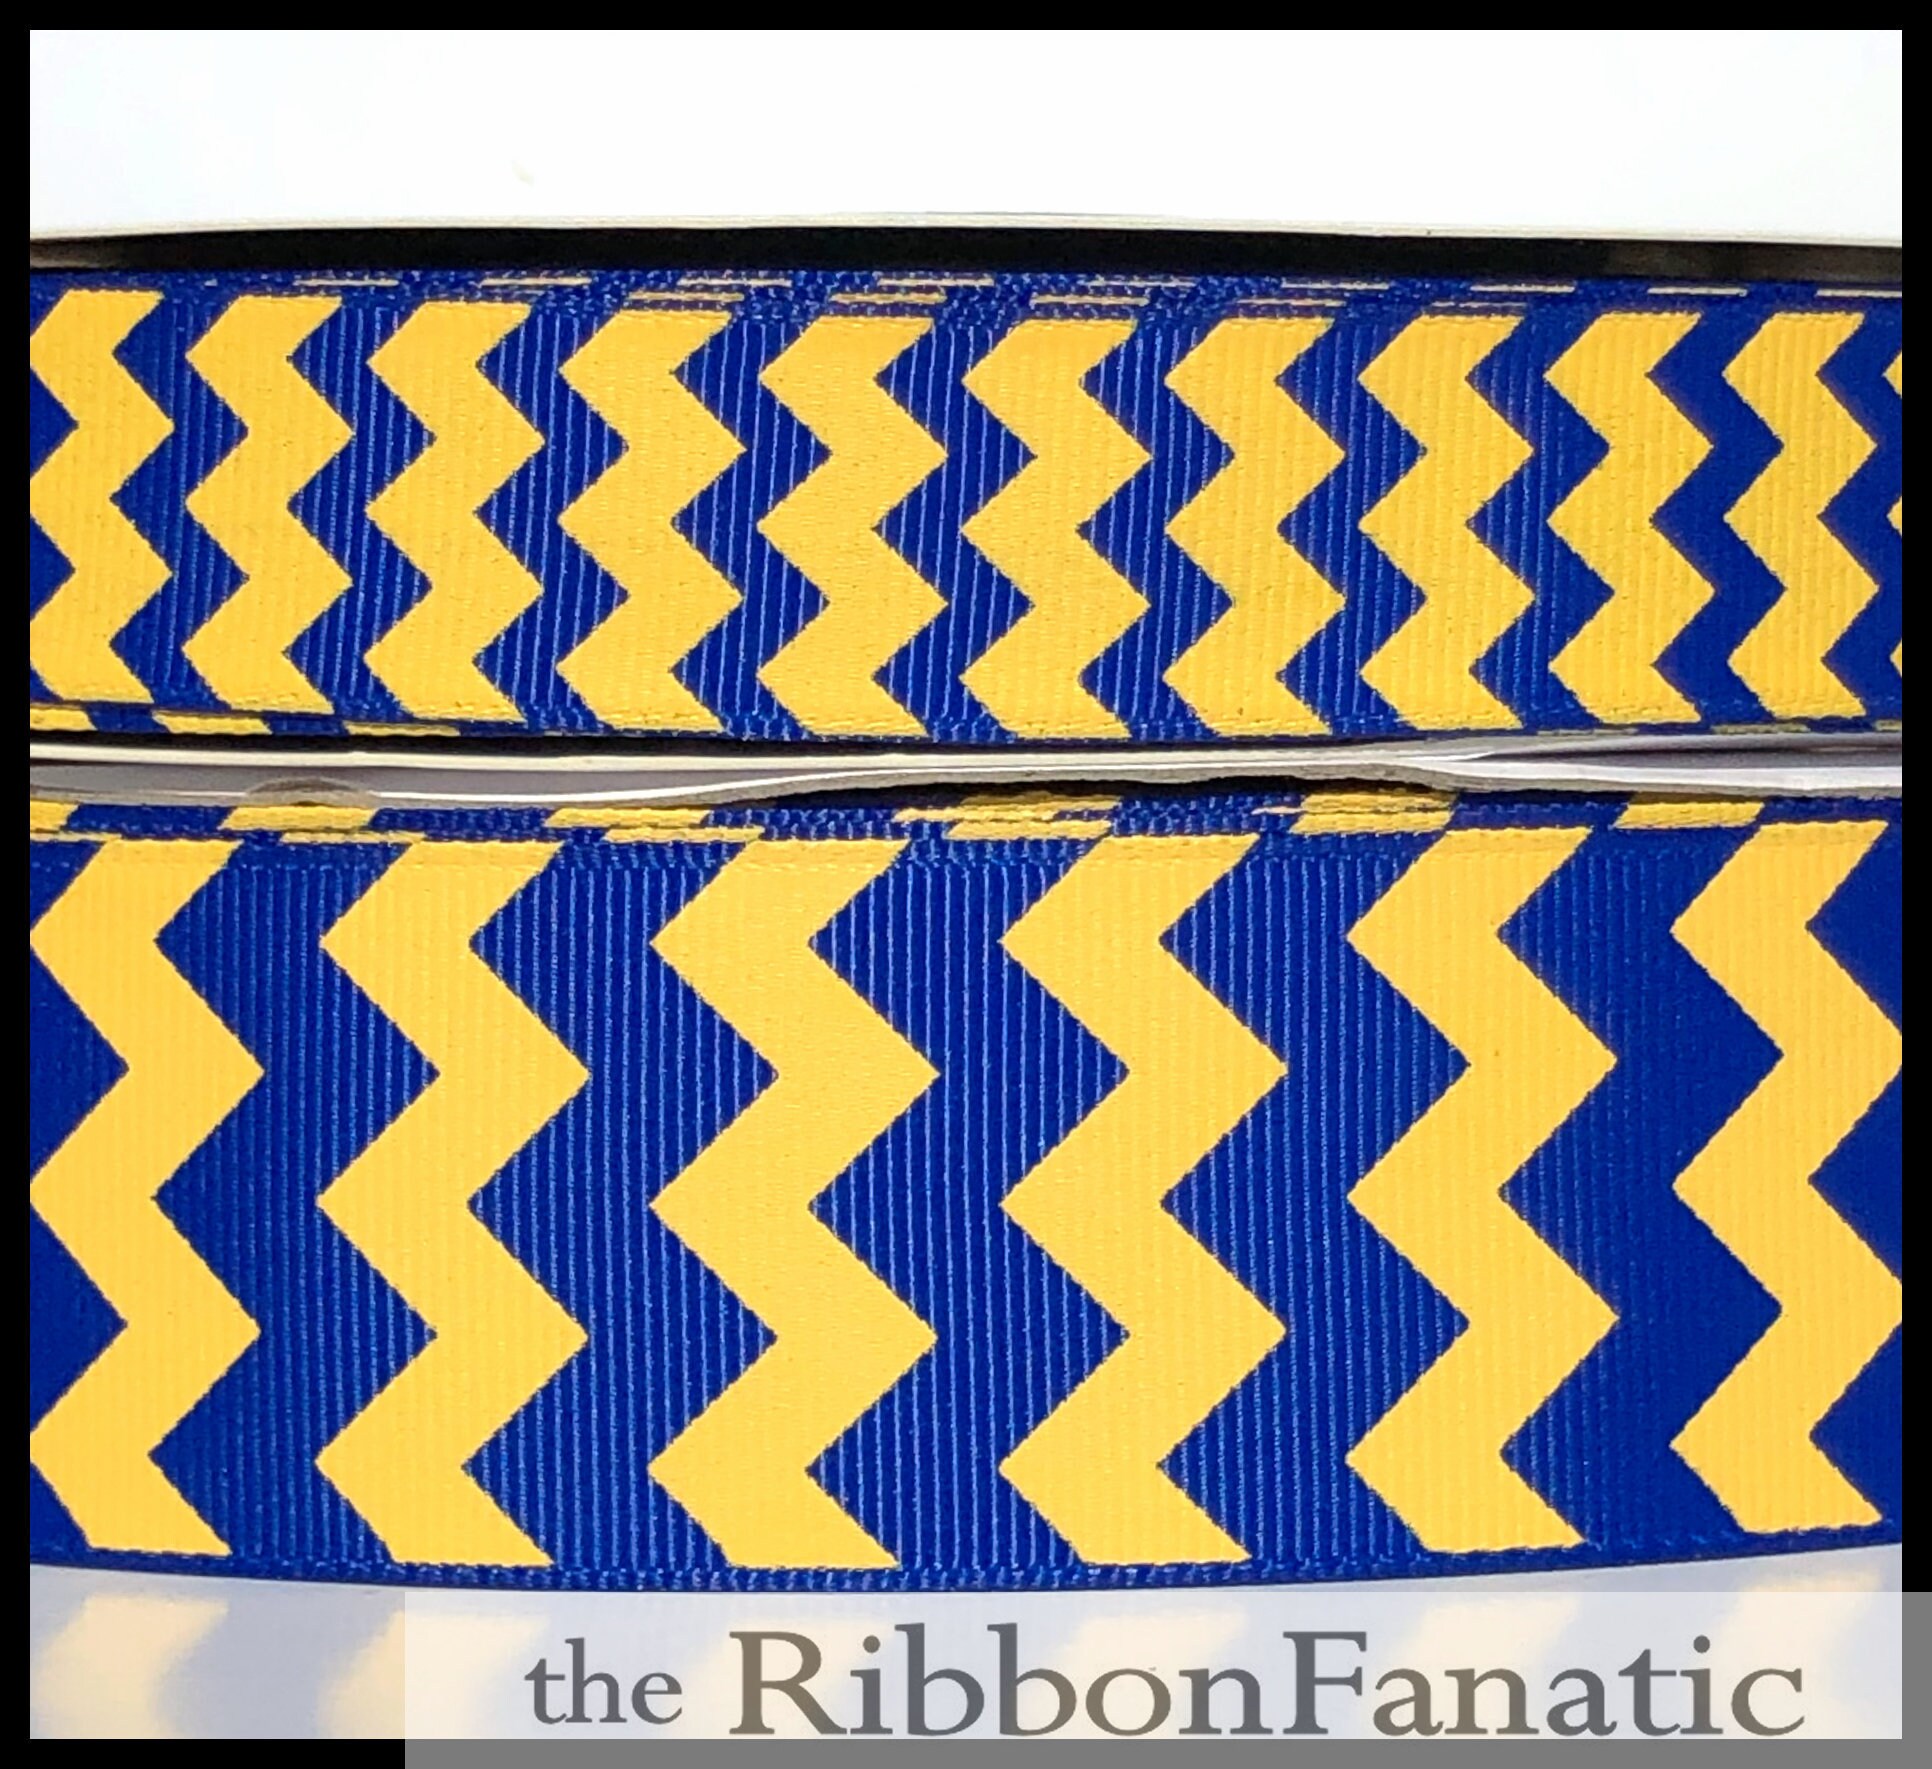 Mayree Royal Blue Satin Ribbon 1-1/2 Inch Cobalt Blue Ribbon for Crafts  Dark Blue Ribbon for Gift Wrapping Thick Ribbon for Wedding Decor Hair Bows